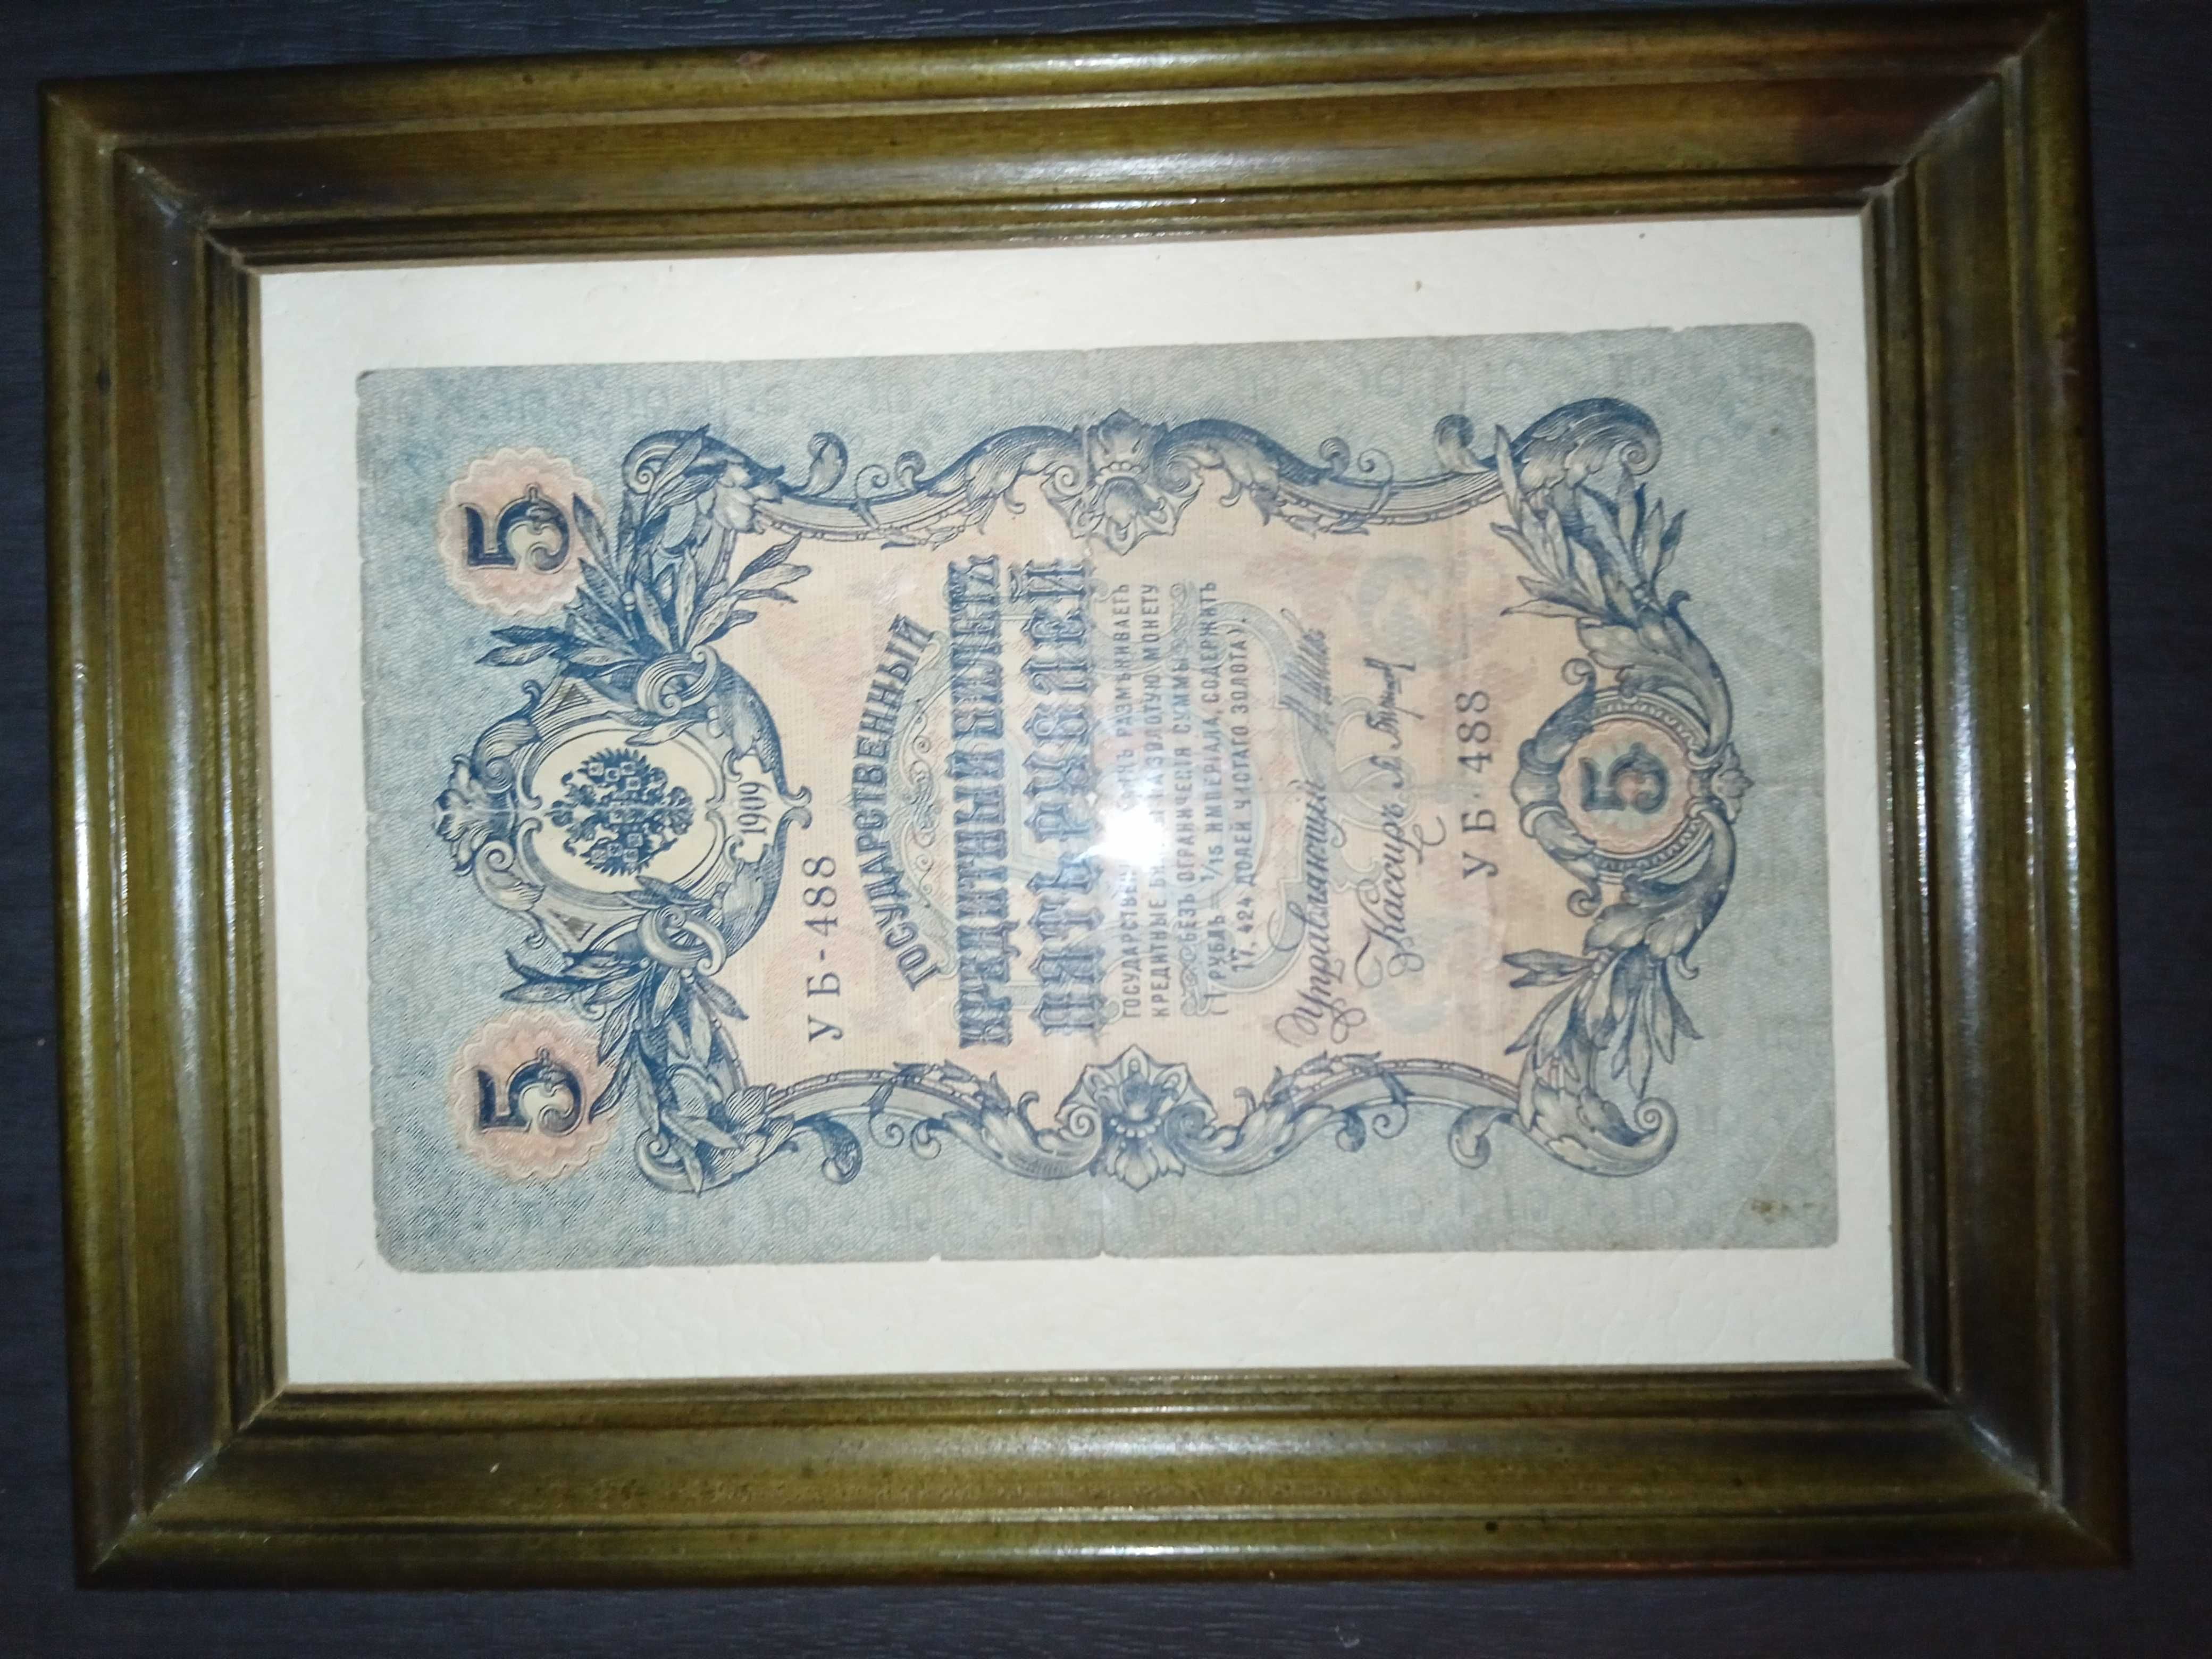 Banknot 5 rubli z 1909 roku oprawiony w ramkę.